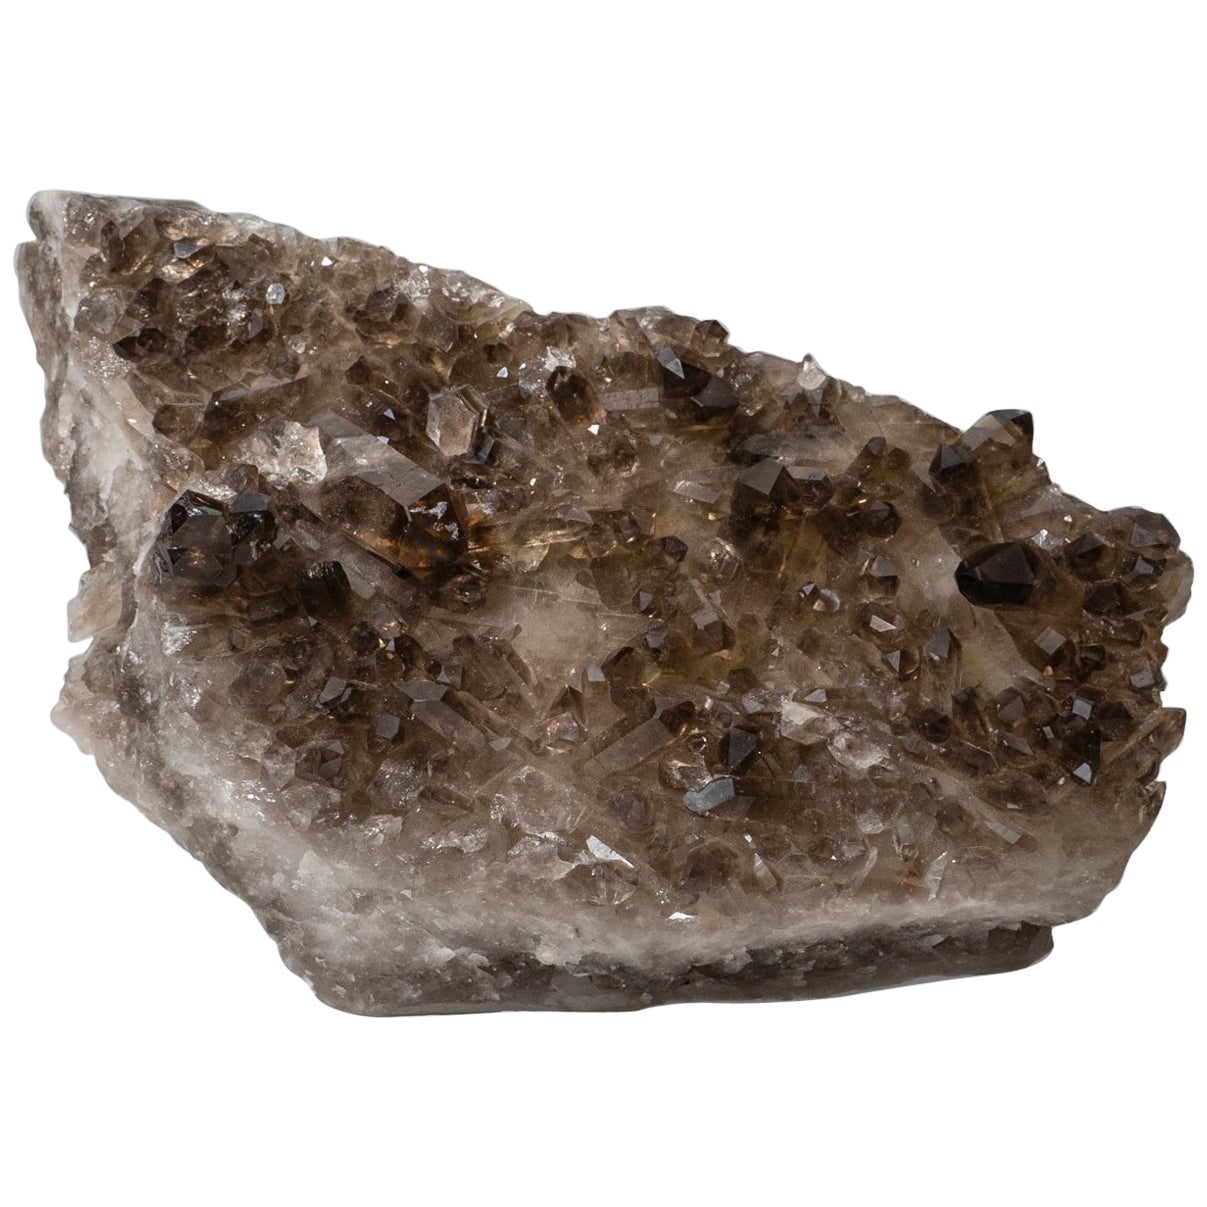 Véritable grappe de cristal de quartz fumé de Minas, Brésil (5.5 lbs)